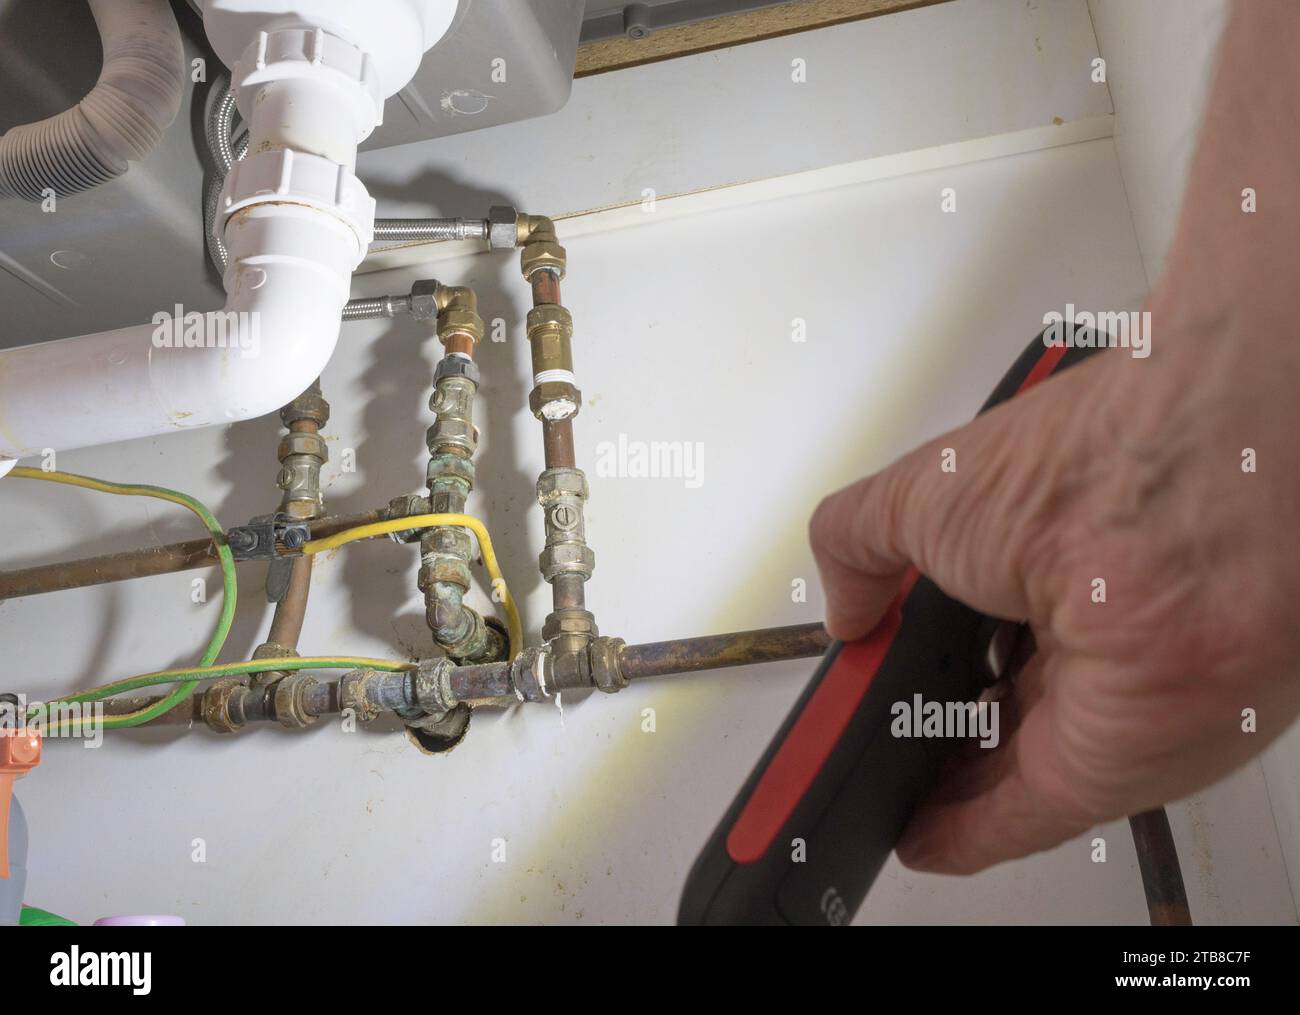 Uomo che utilizza una lampada a LED portatile o una torcia a LED per ispezionare l'impianto idraulico domestico Foto Stock